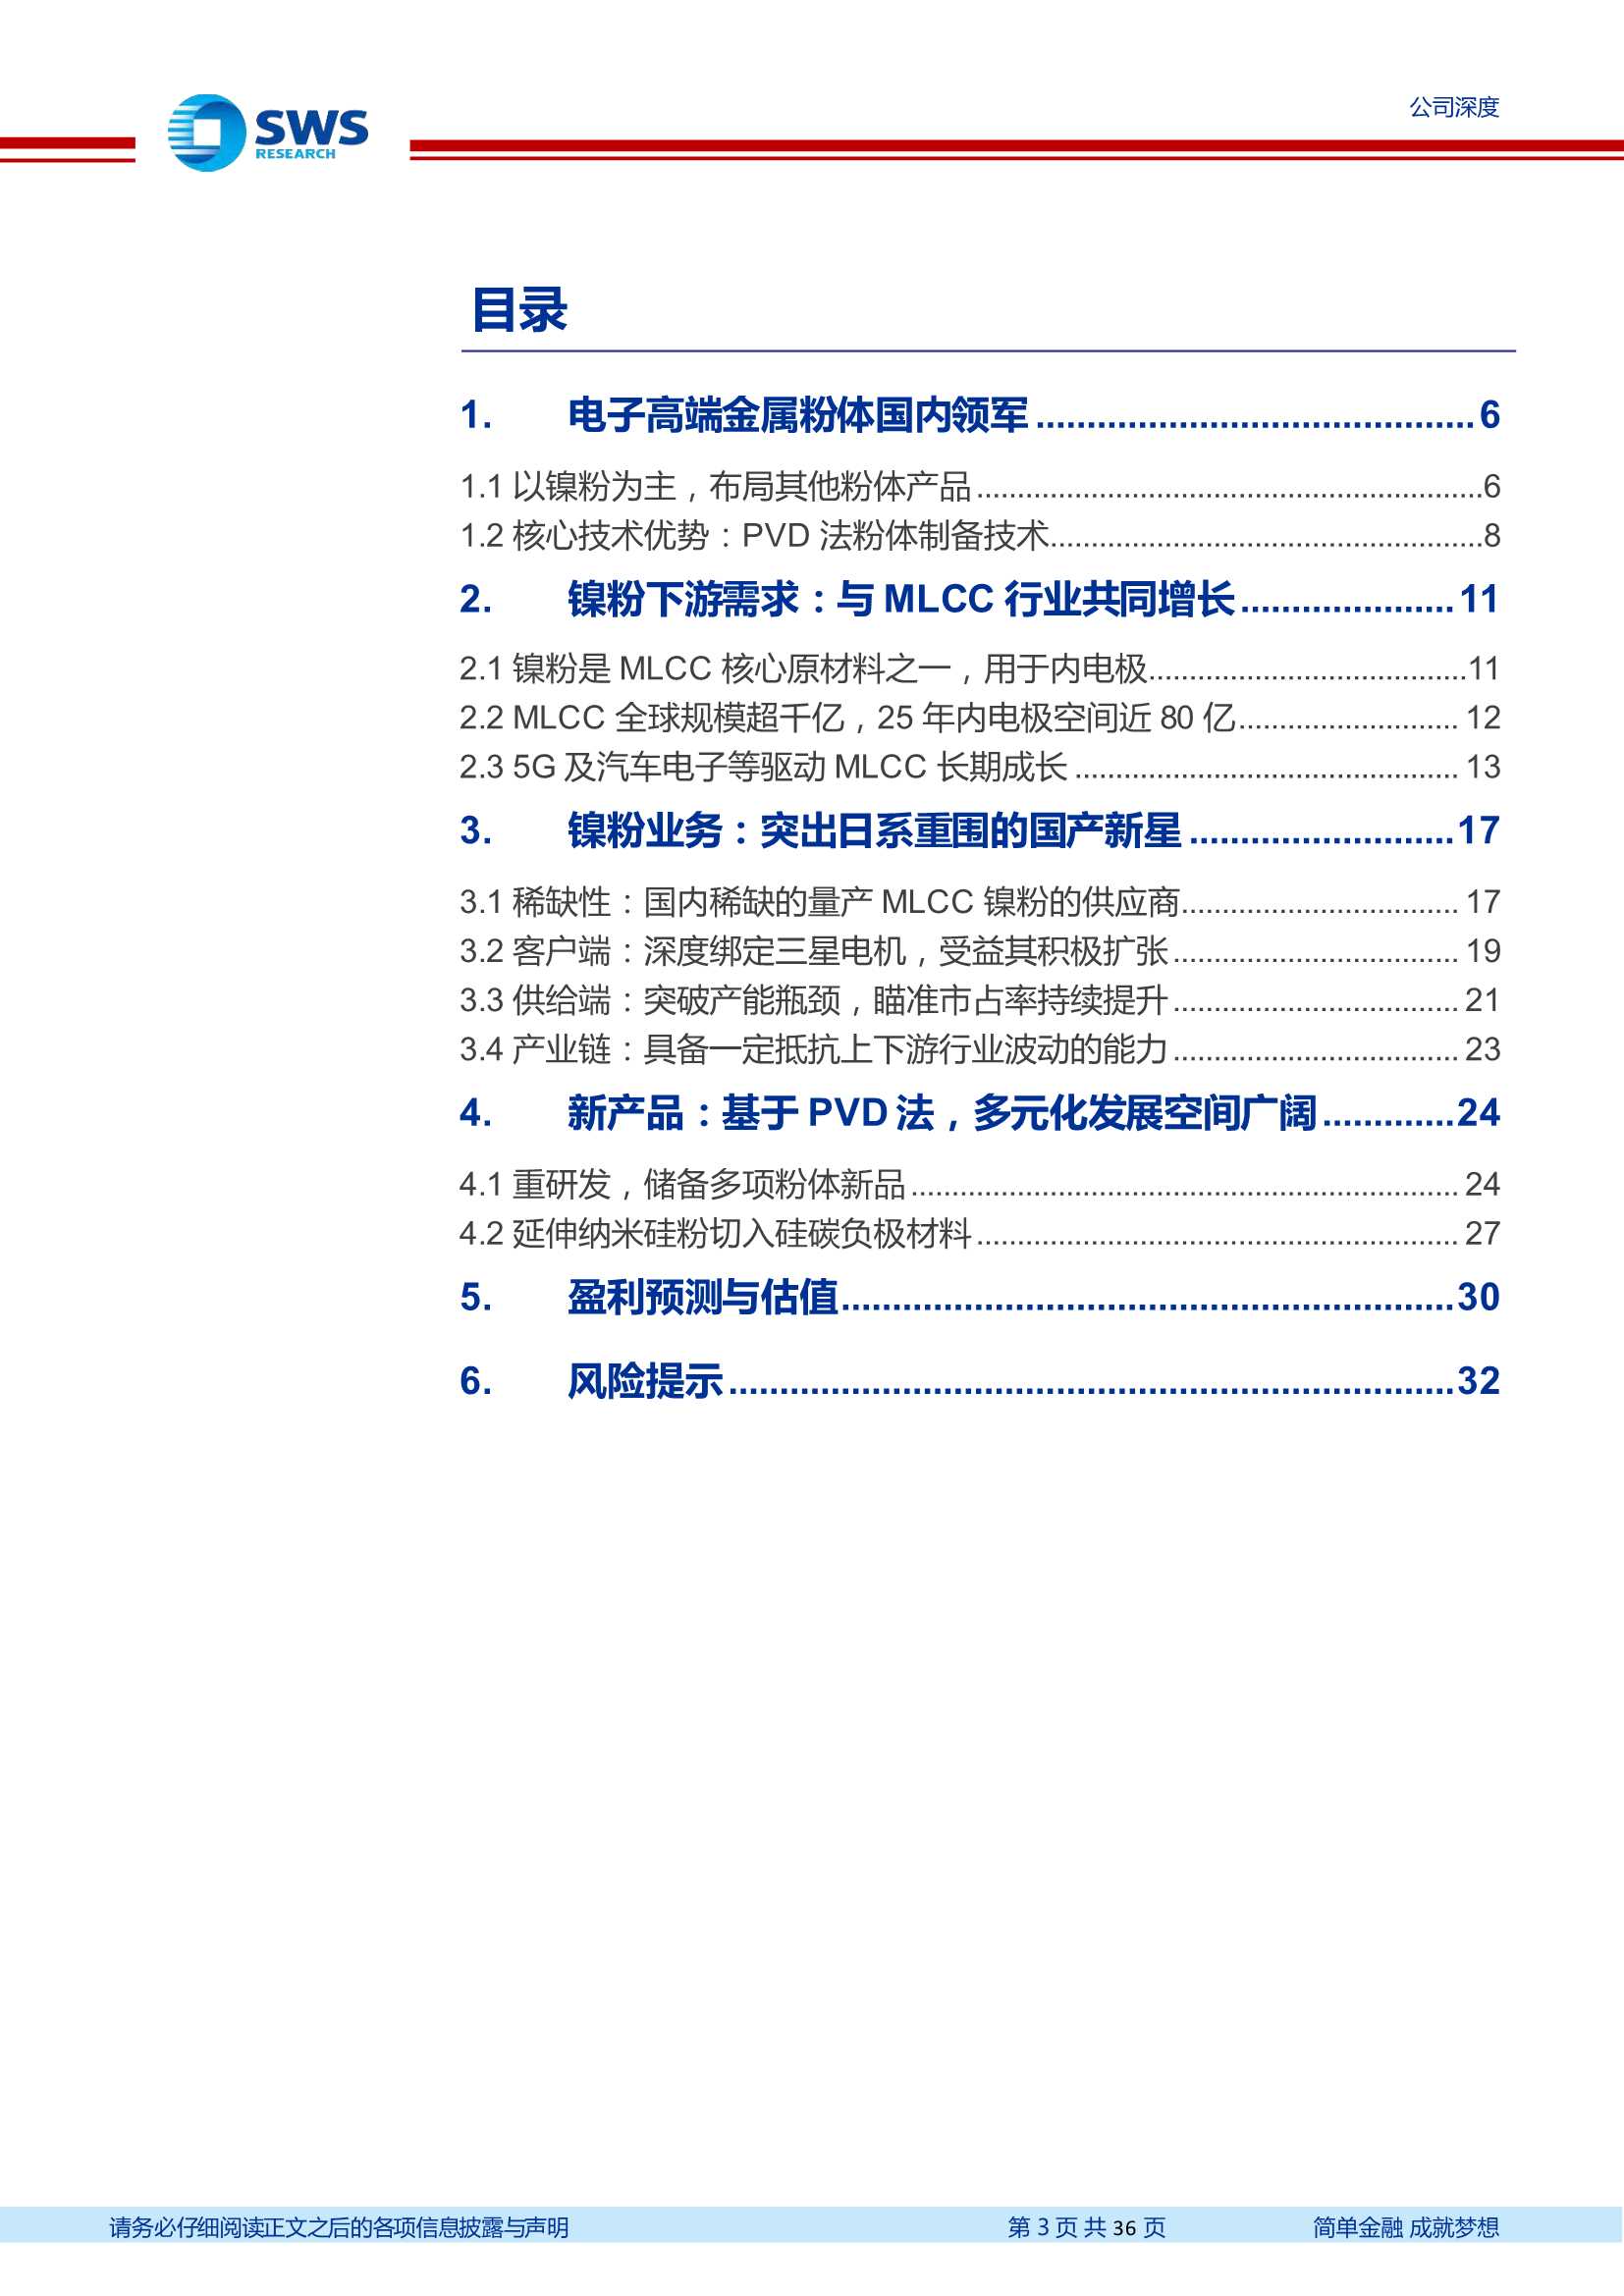 申万宏源-博迁新材-605376-电子镍粉技术全球一流，纳米硅粉接力成长-20220126-36页